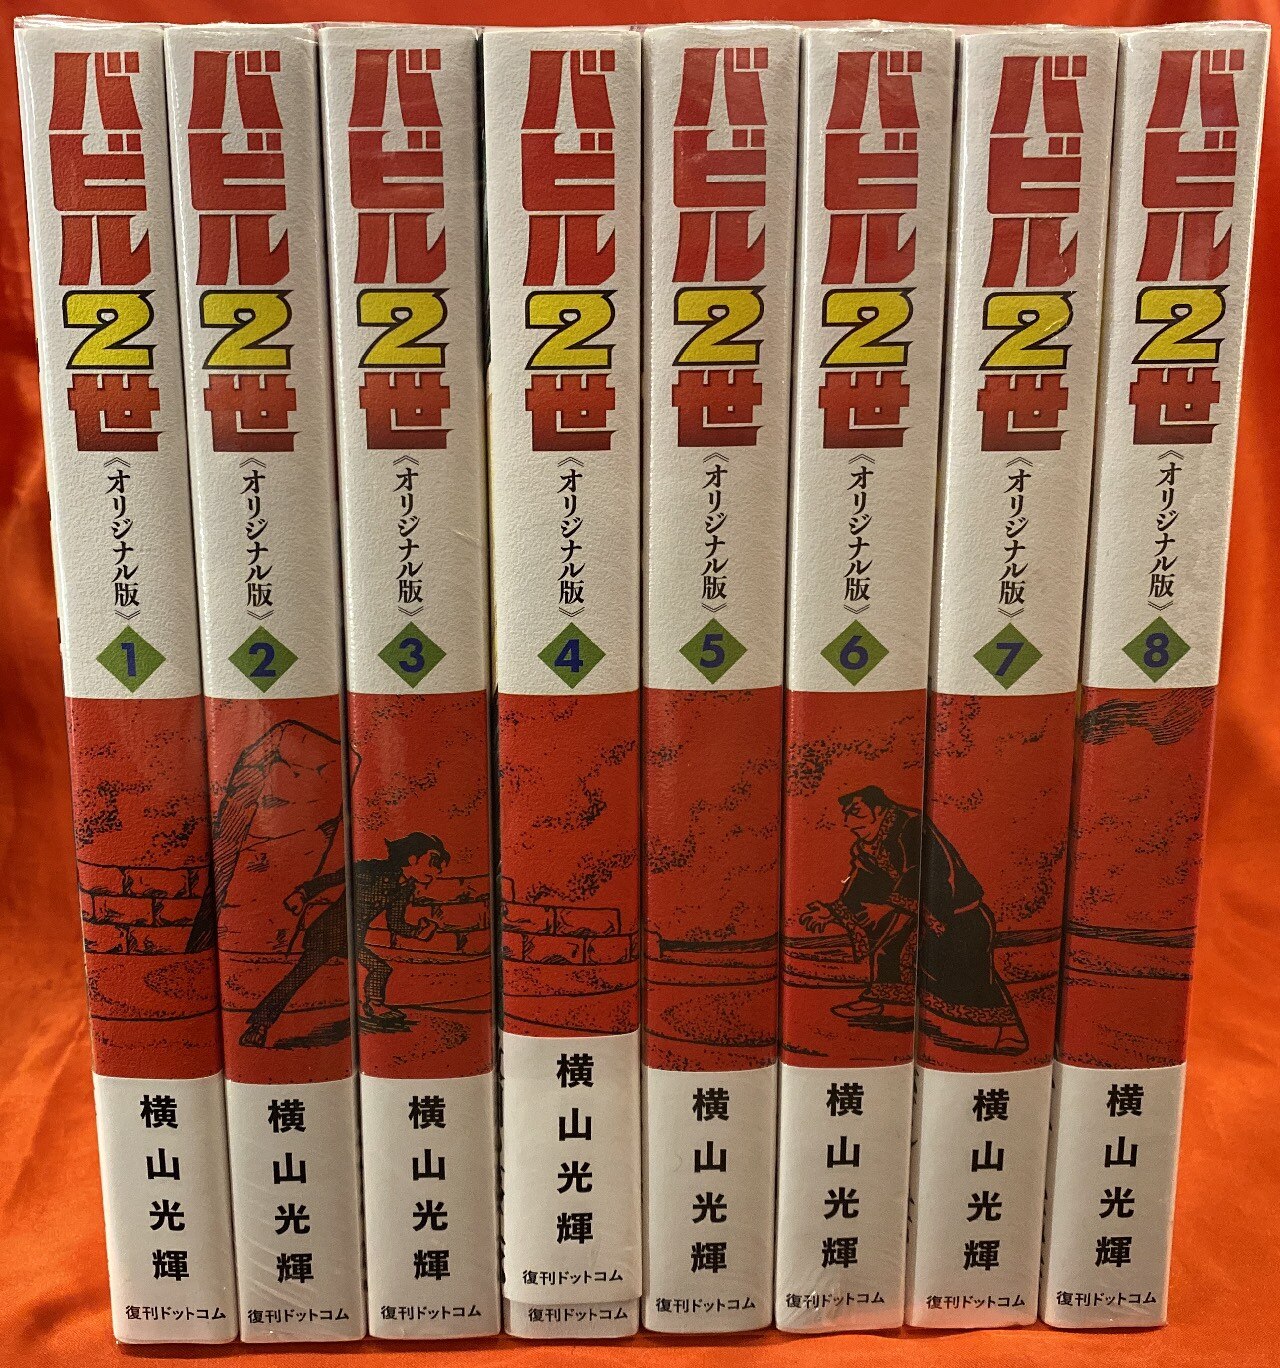 復刊ドットコム 横山光輝 バビル2世 《オリジナル版》 全8巻 帯付セット